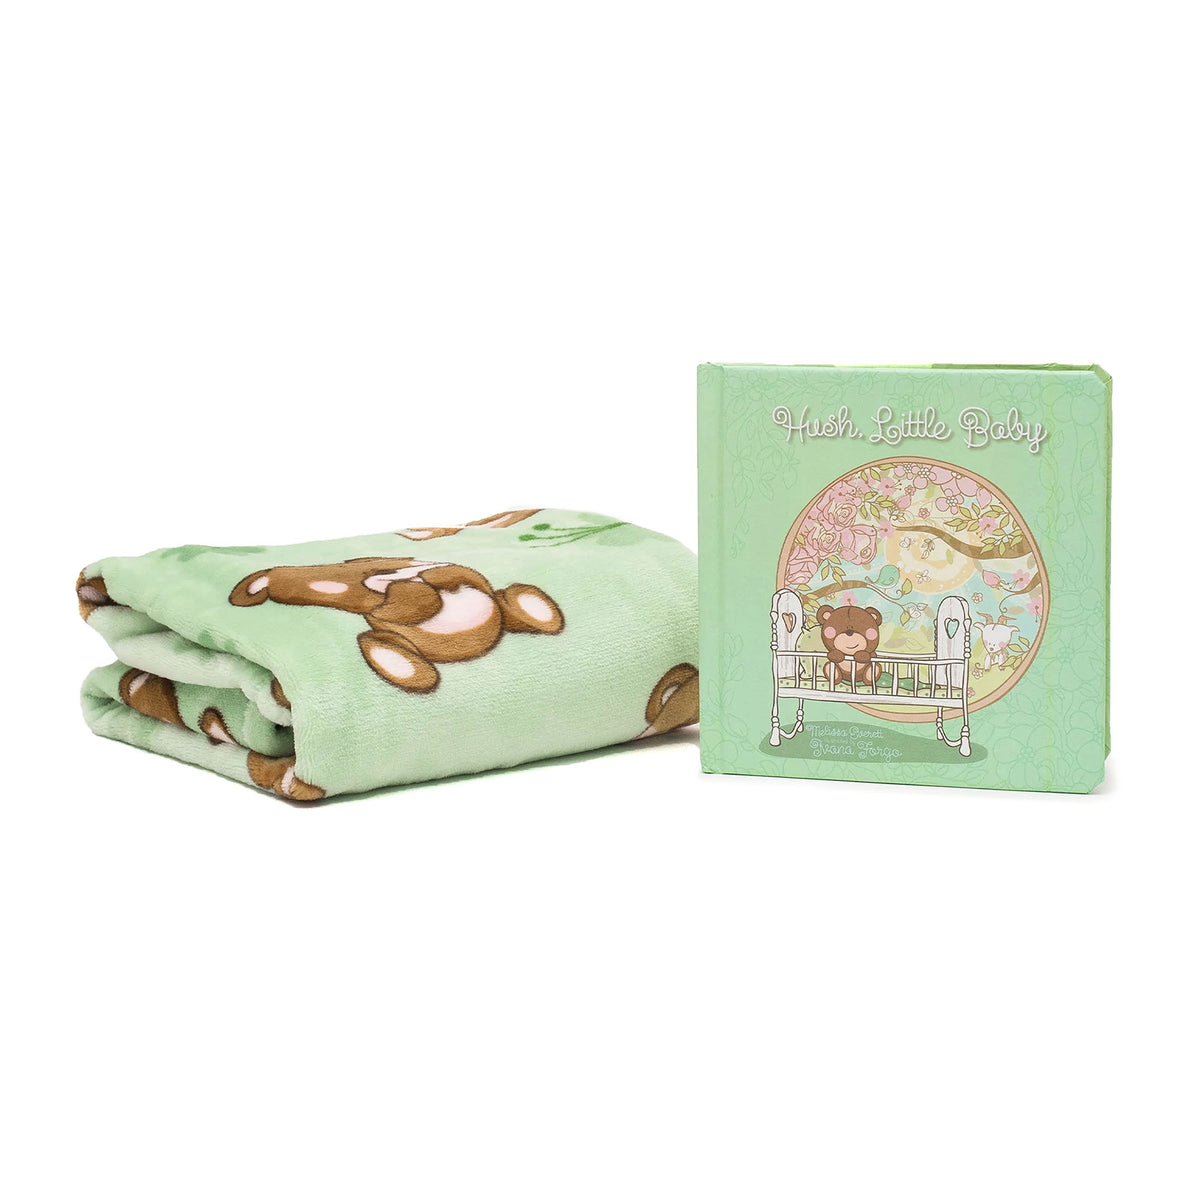 Hush Little Baby - Binks &amp; Books Blanket and Book Gift Set